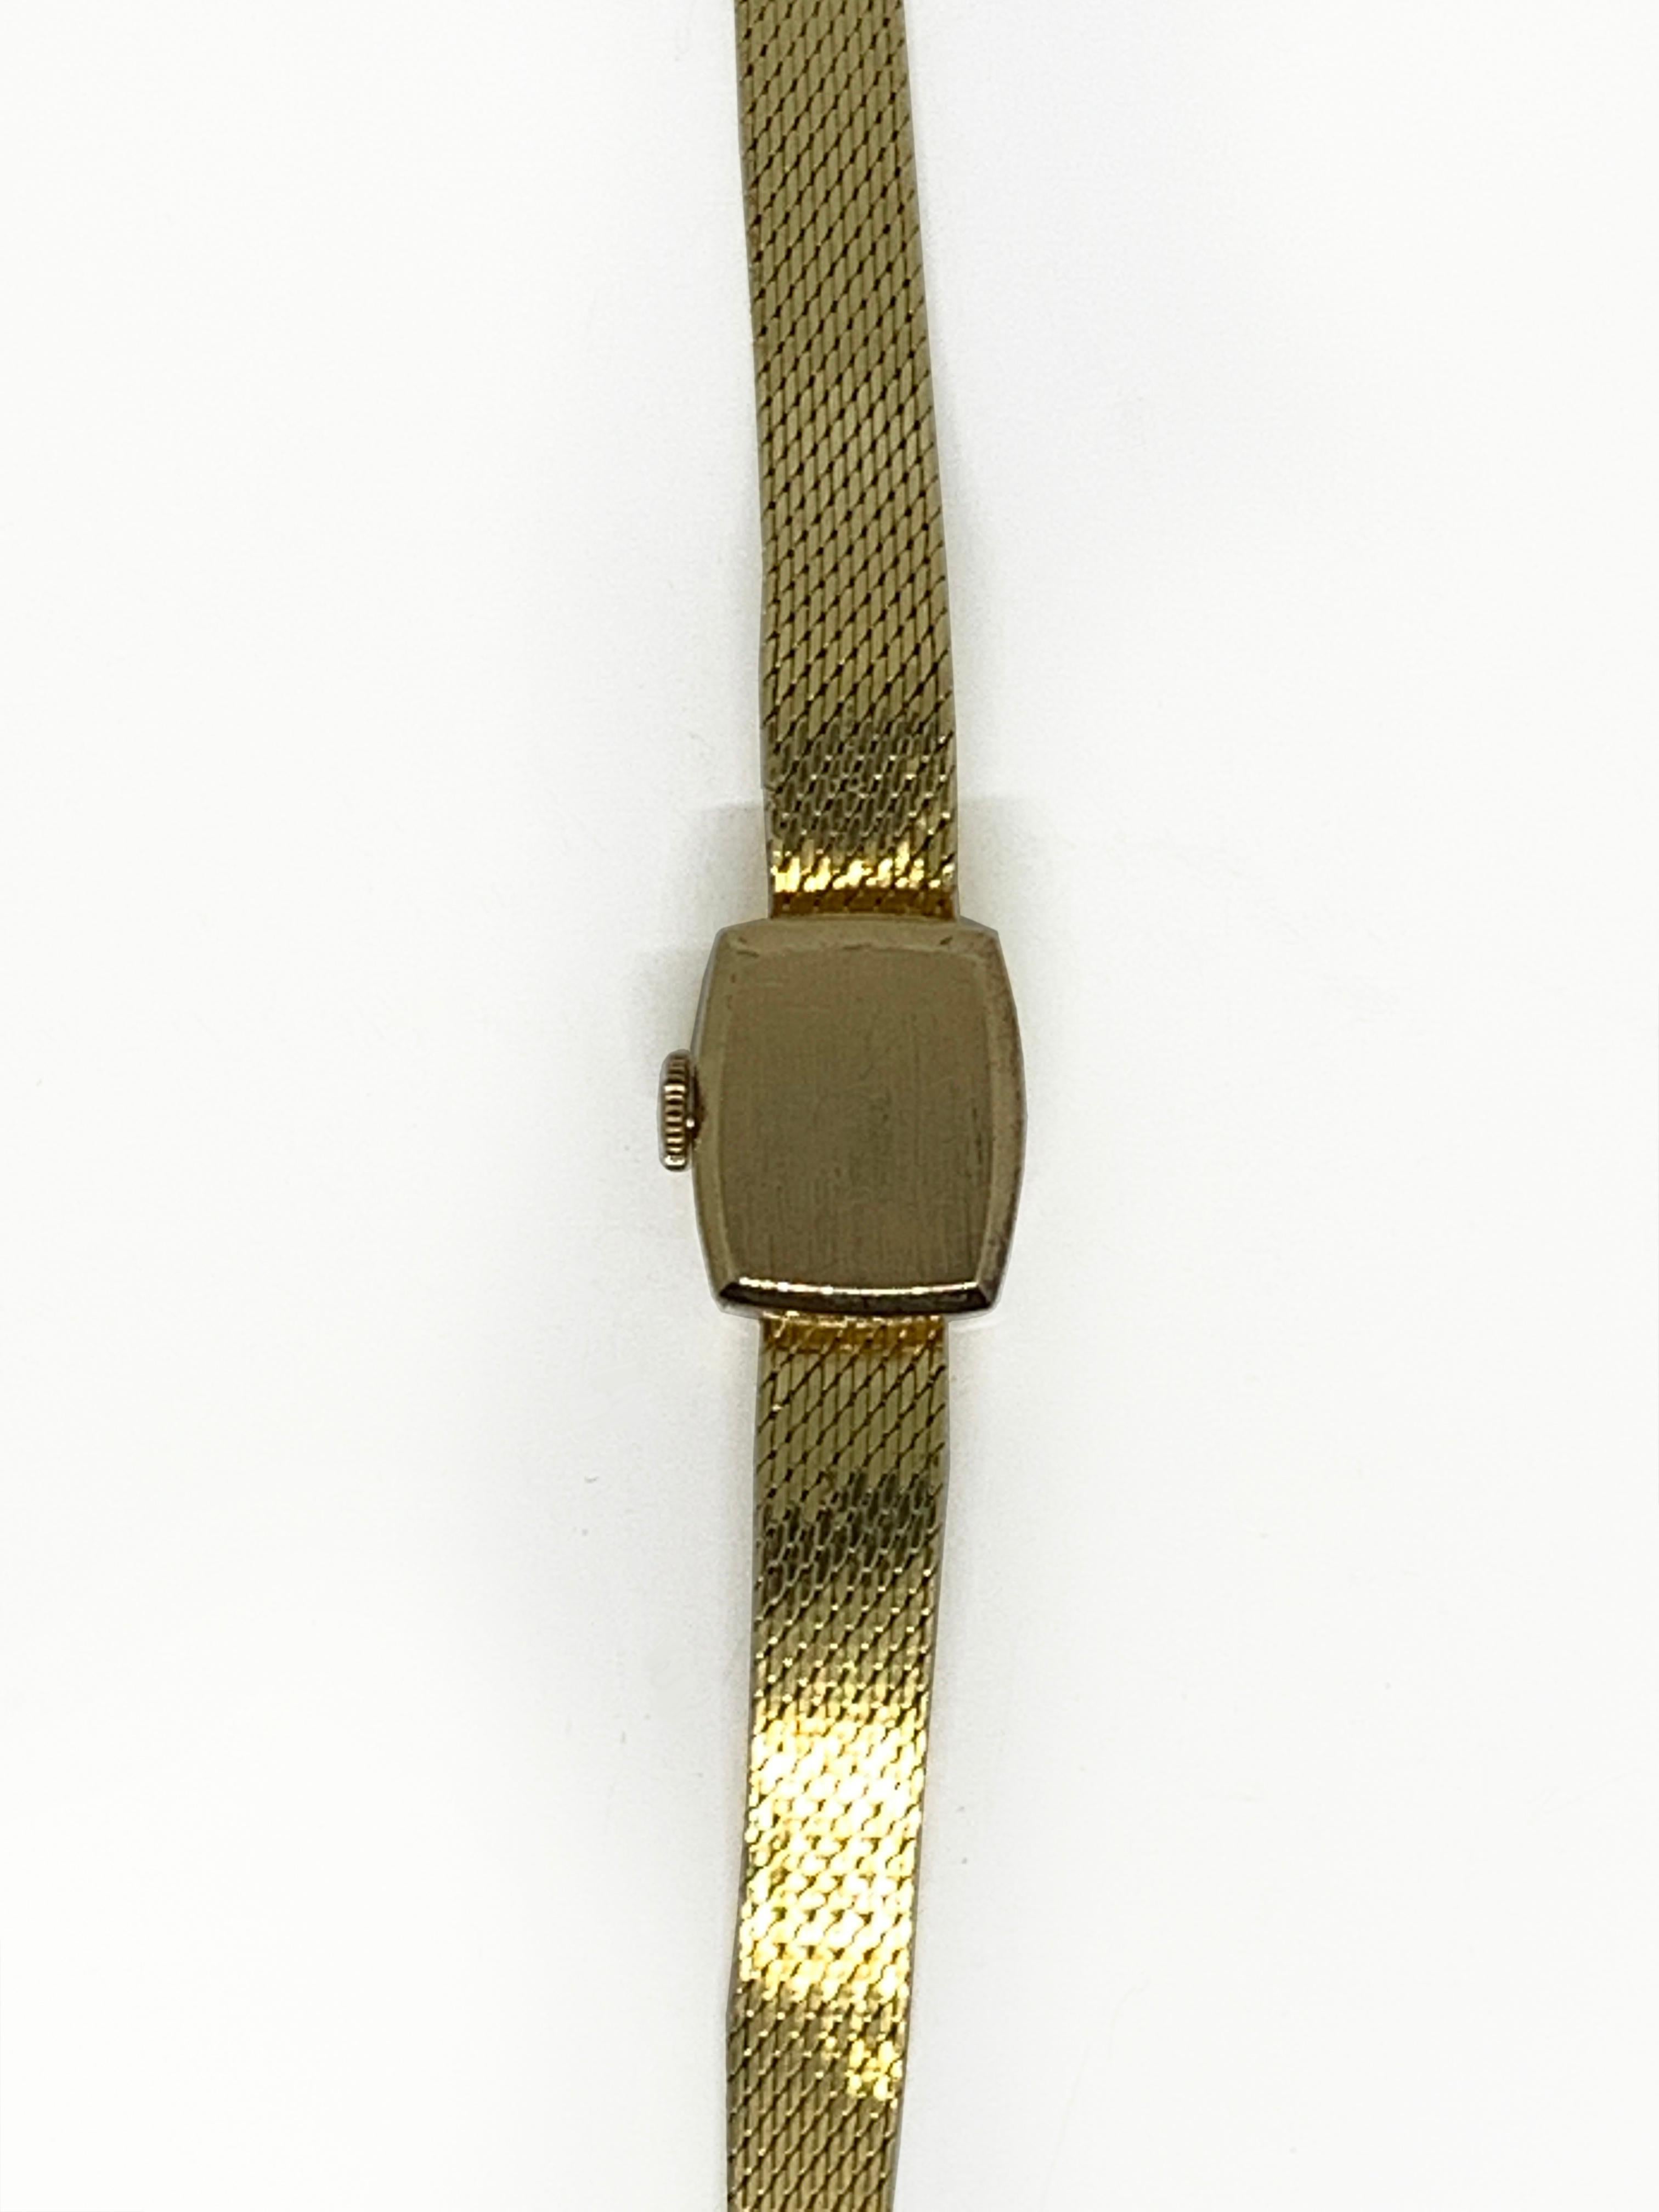 Rolex 
cocktail watch.
18 CARAT GOLD CASE
Hand-wound mechanical movement
Size: 13 x 15 mm
Gross weight: 20,4 gr
Gold bracelet
circa 1960
1500 euros